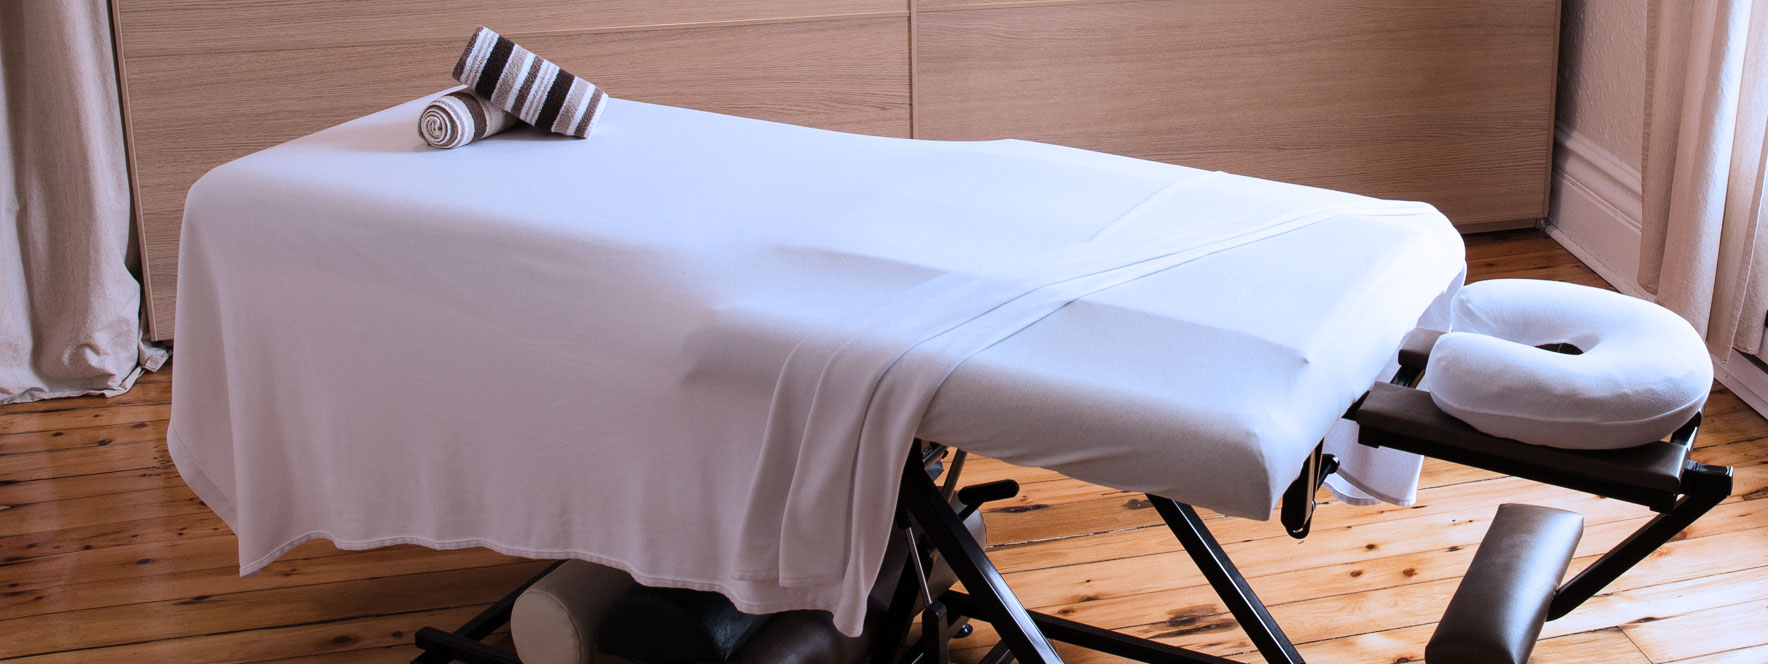 Table de massage ajustable